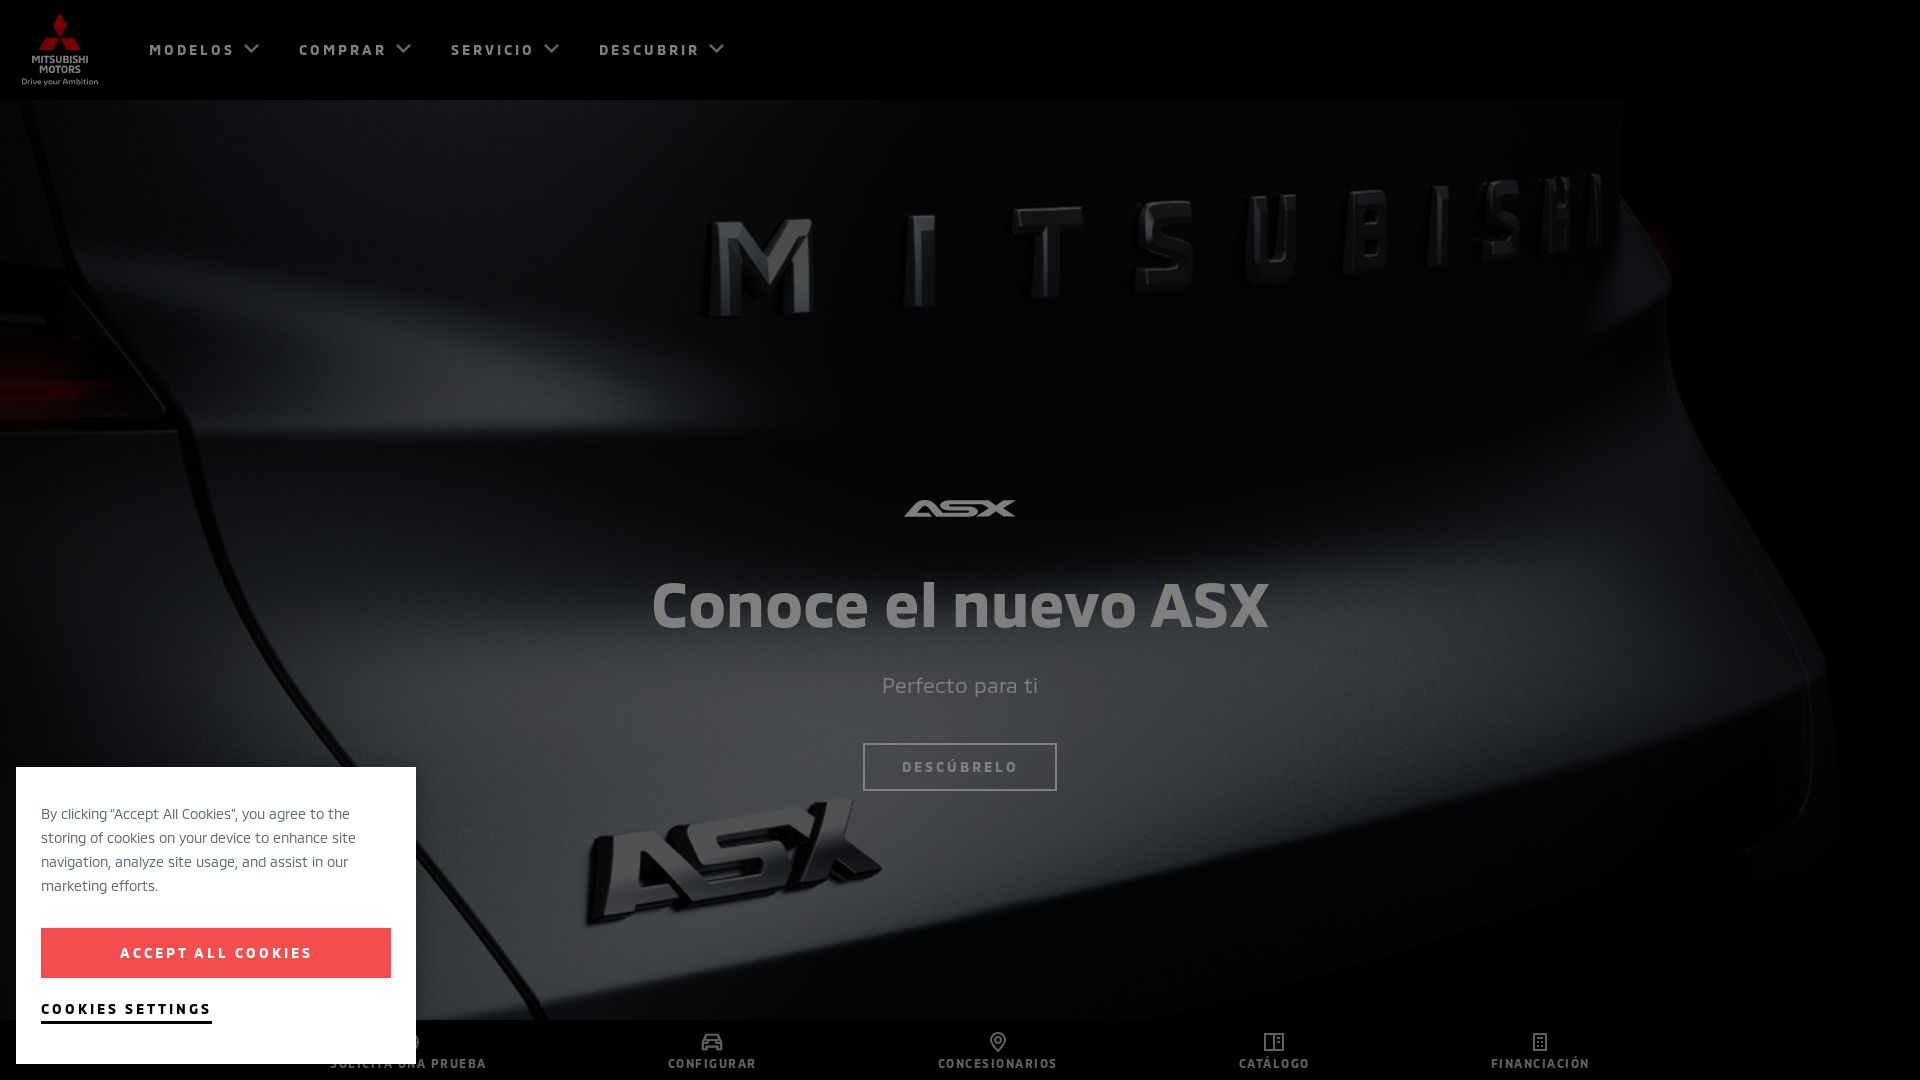 网站状态 mitsubishi-motors.es 是  在线的